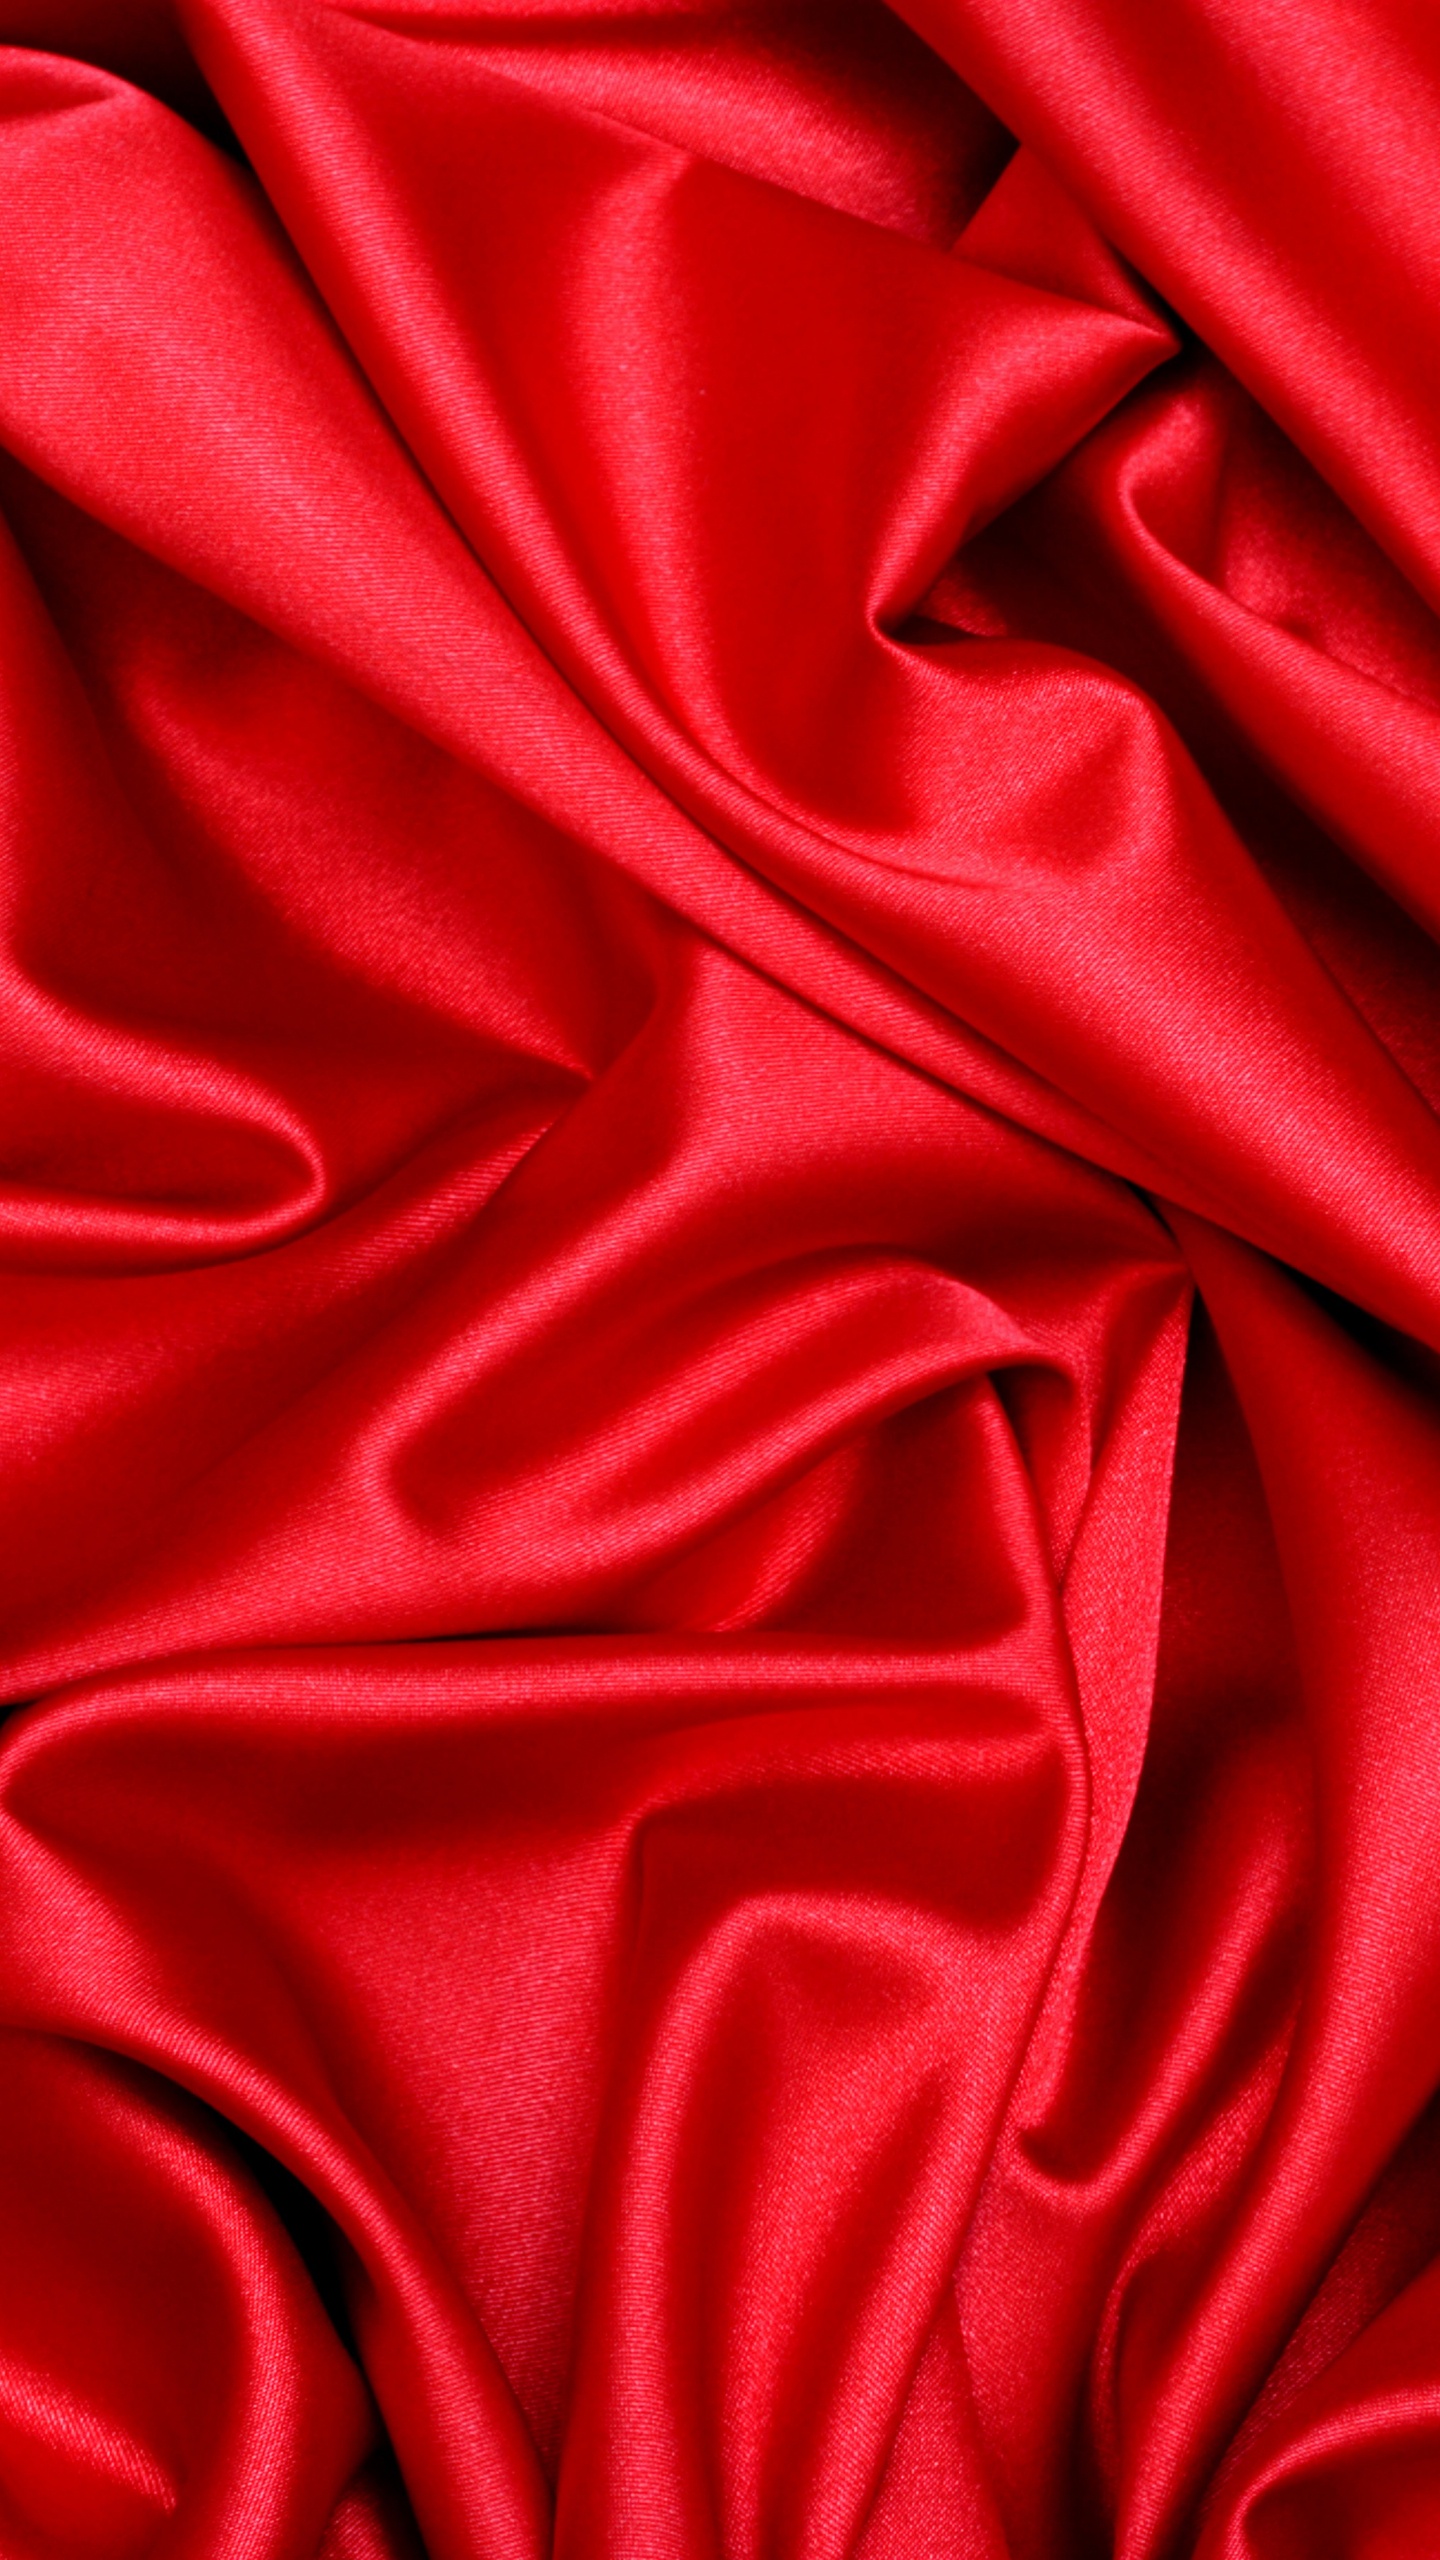 Textil Rojo en Fotografía de Cerca. Wallpaper in 1440x2560 Resolution